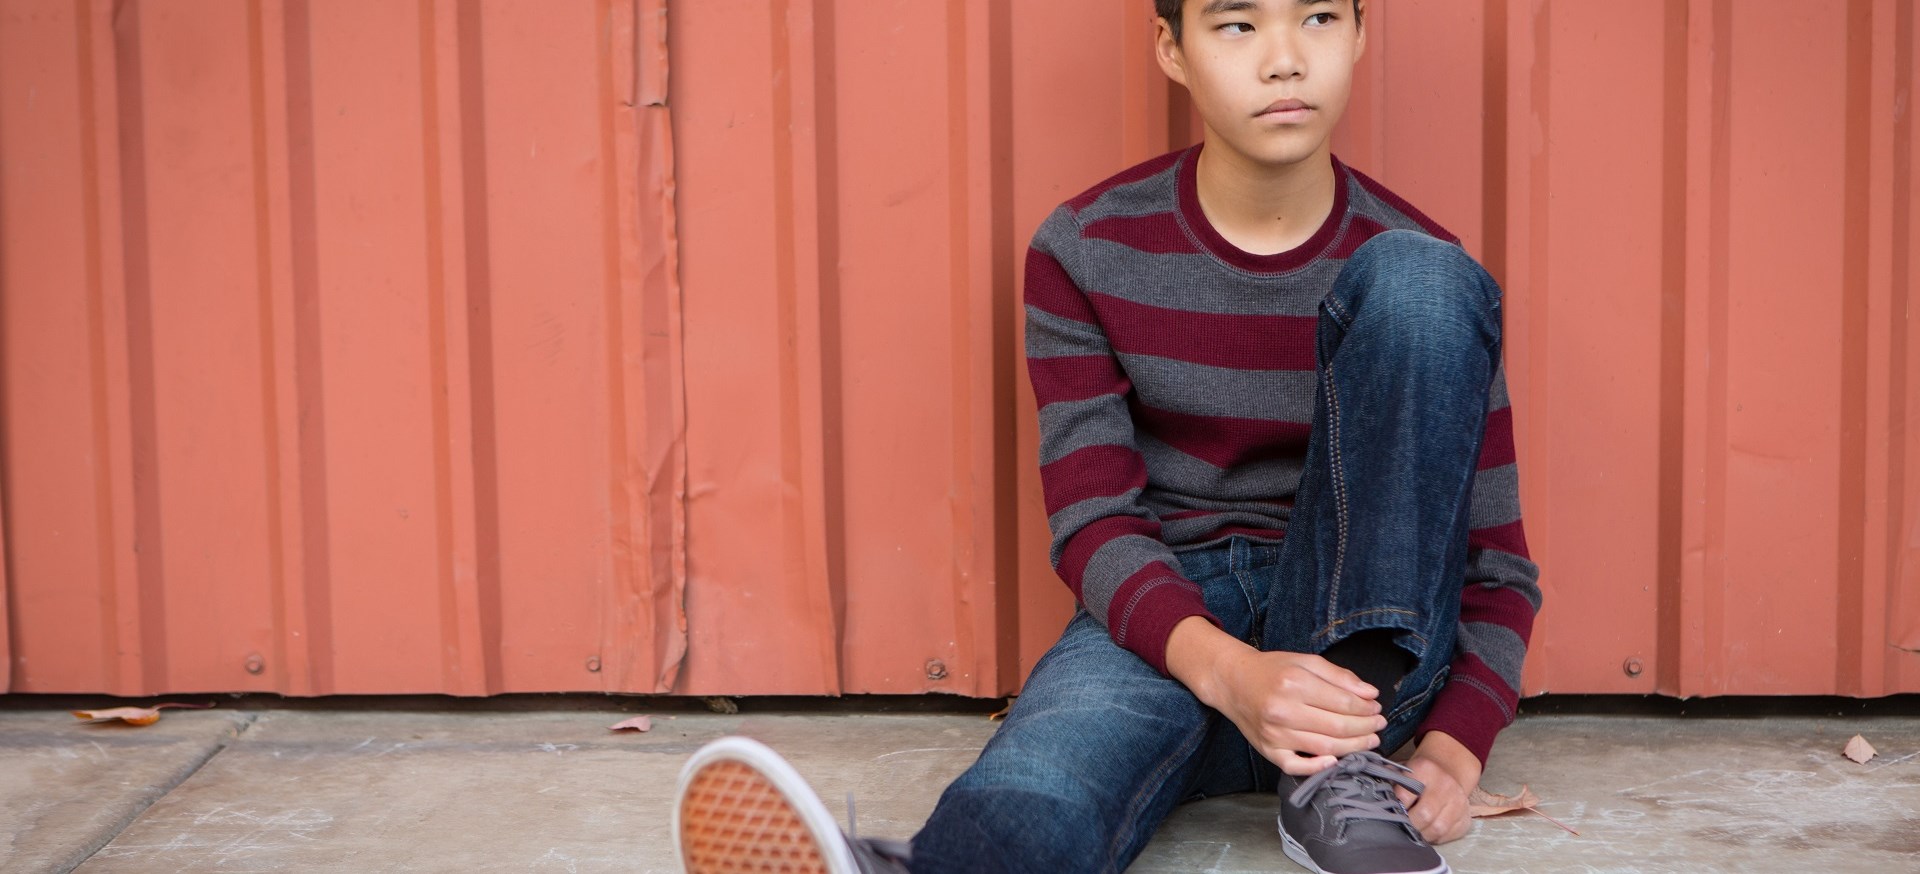 teenage boy sitting leaning against a wall